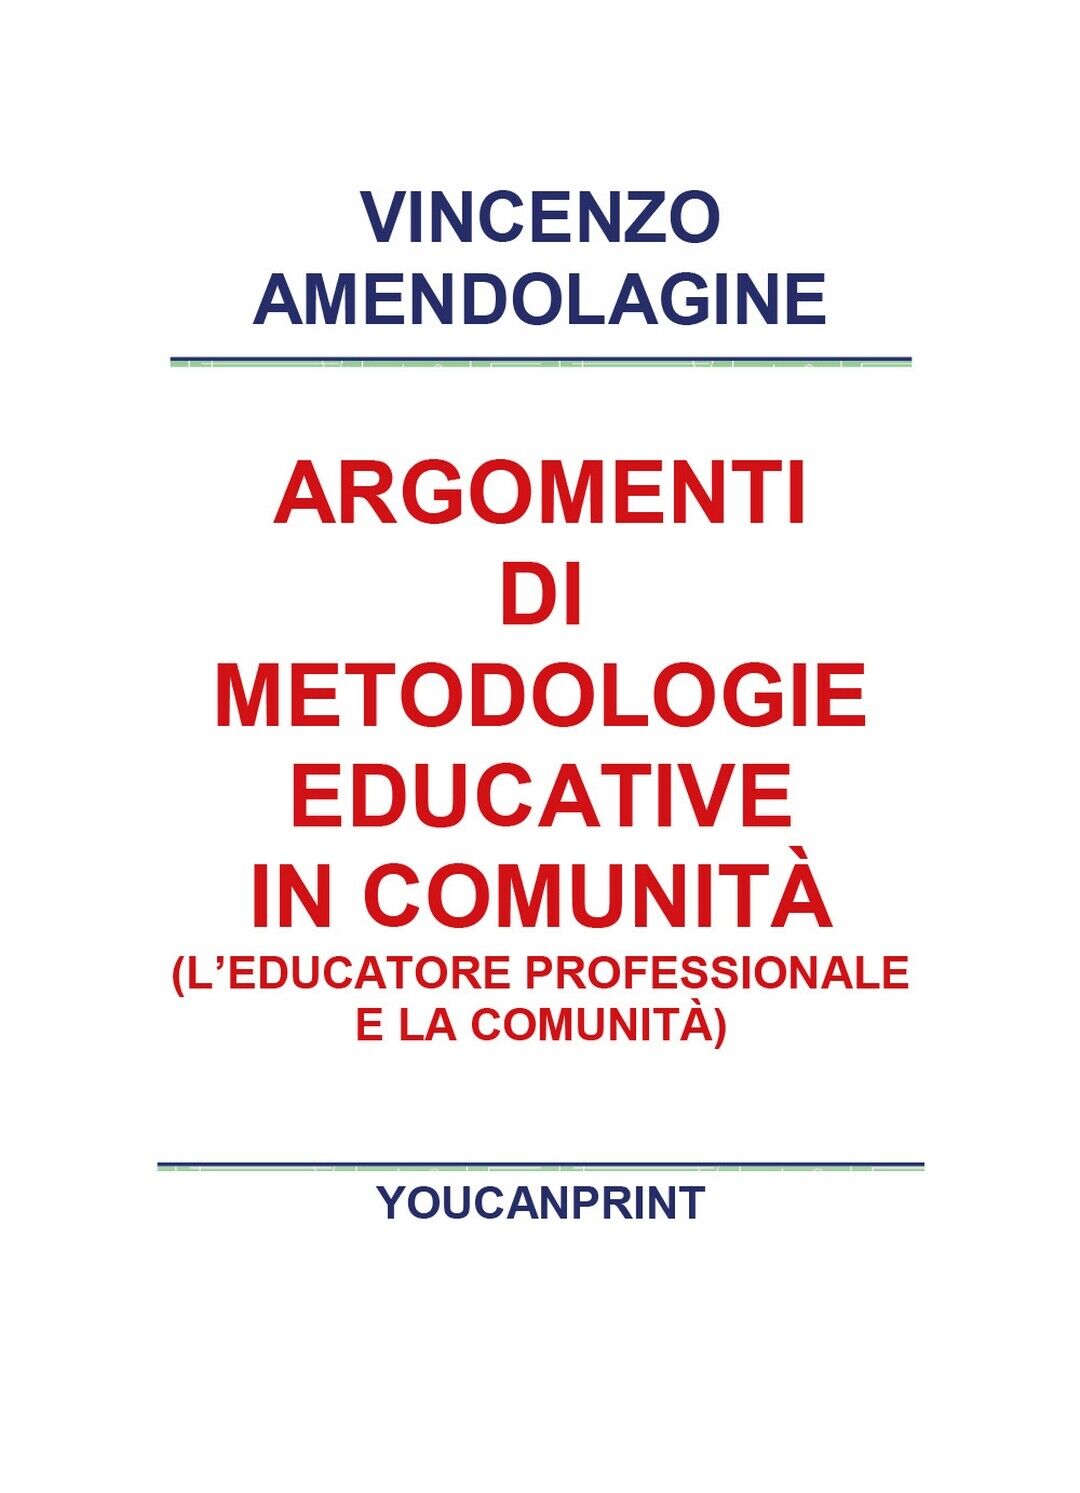 Argomenti di metodologie educative in comunit?, Vincenzo Amendolagine,  2018